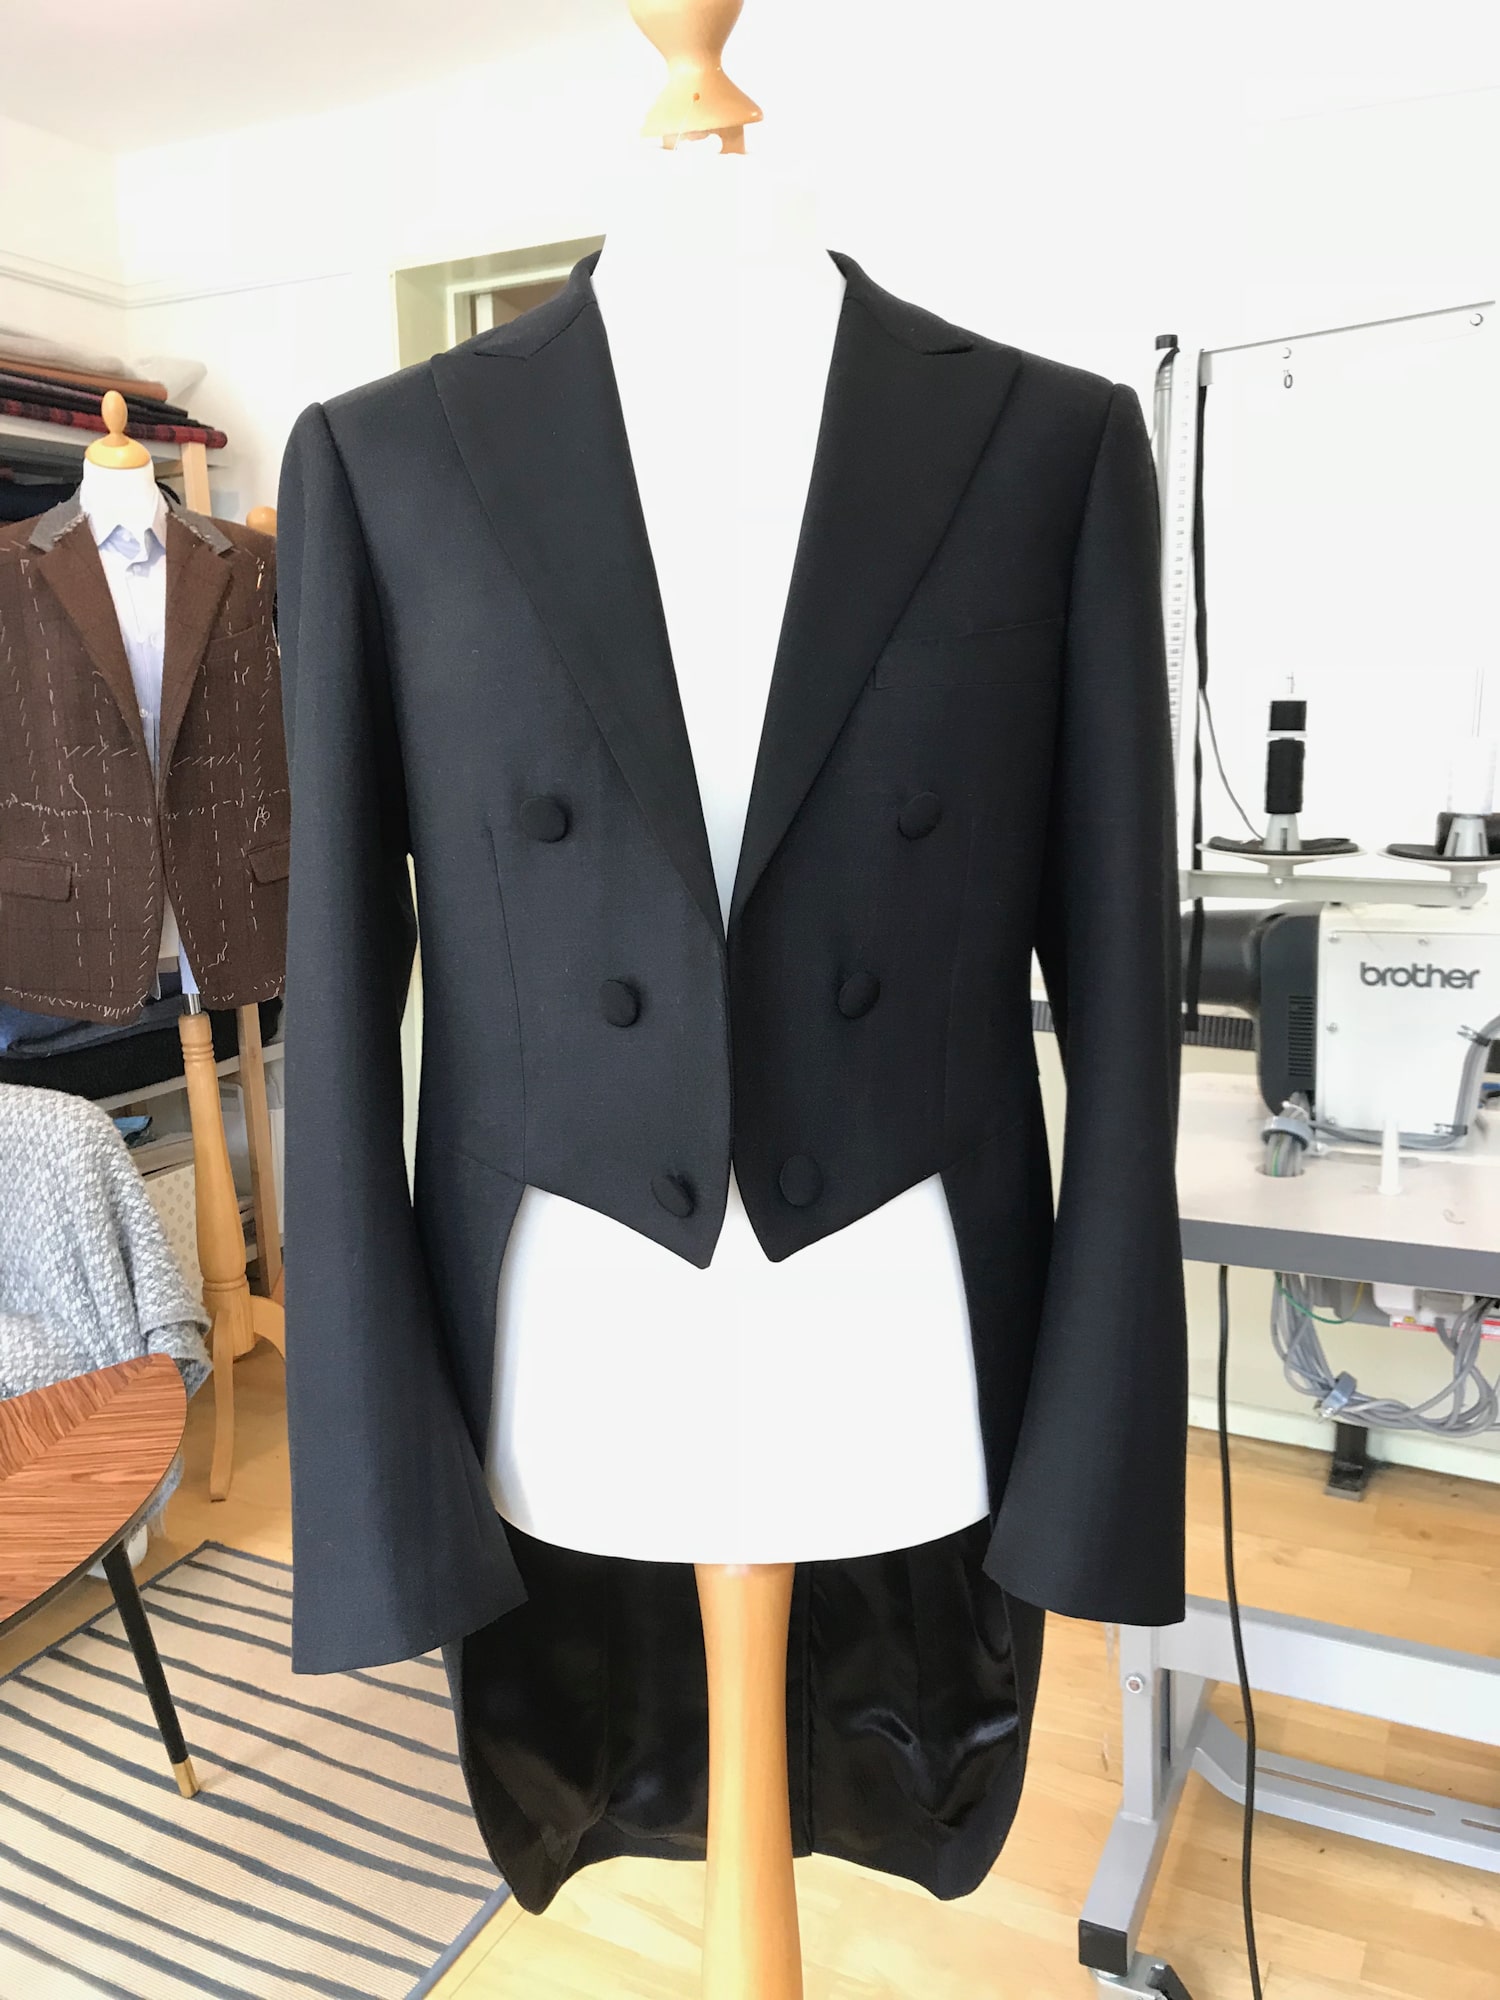 A black suit on a mannequin